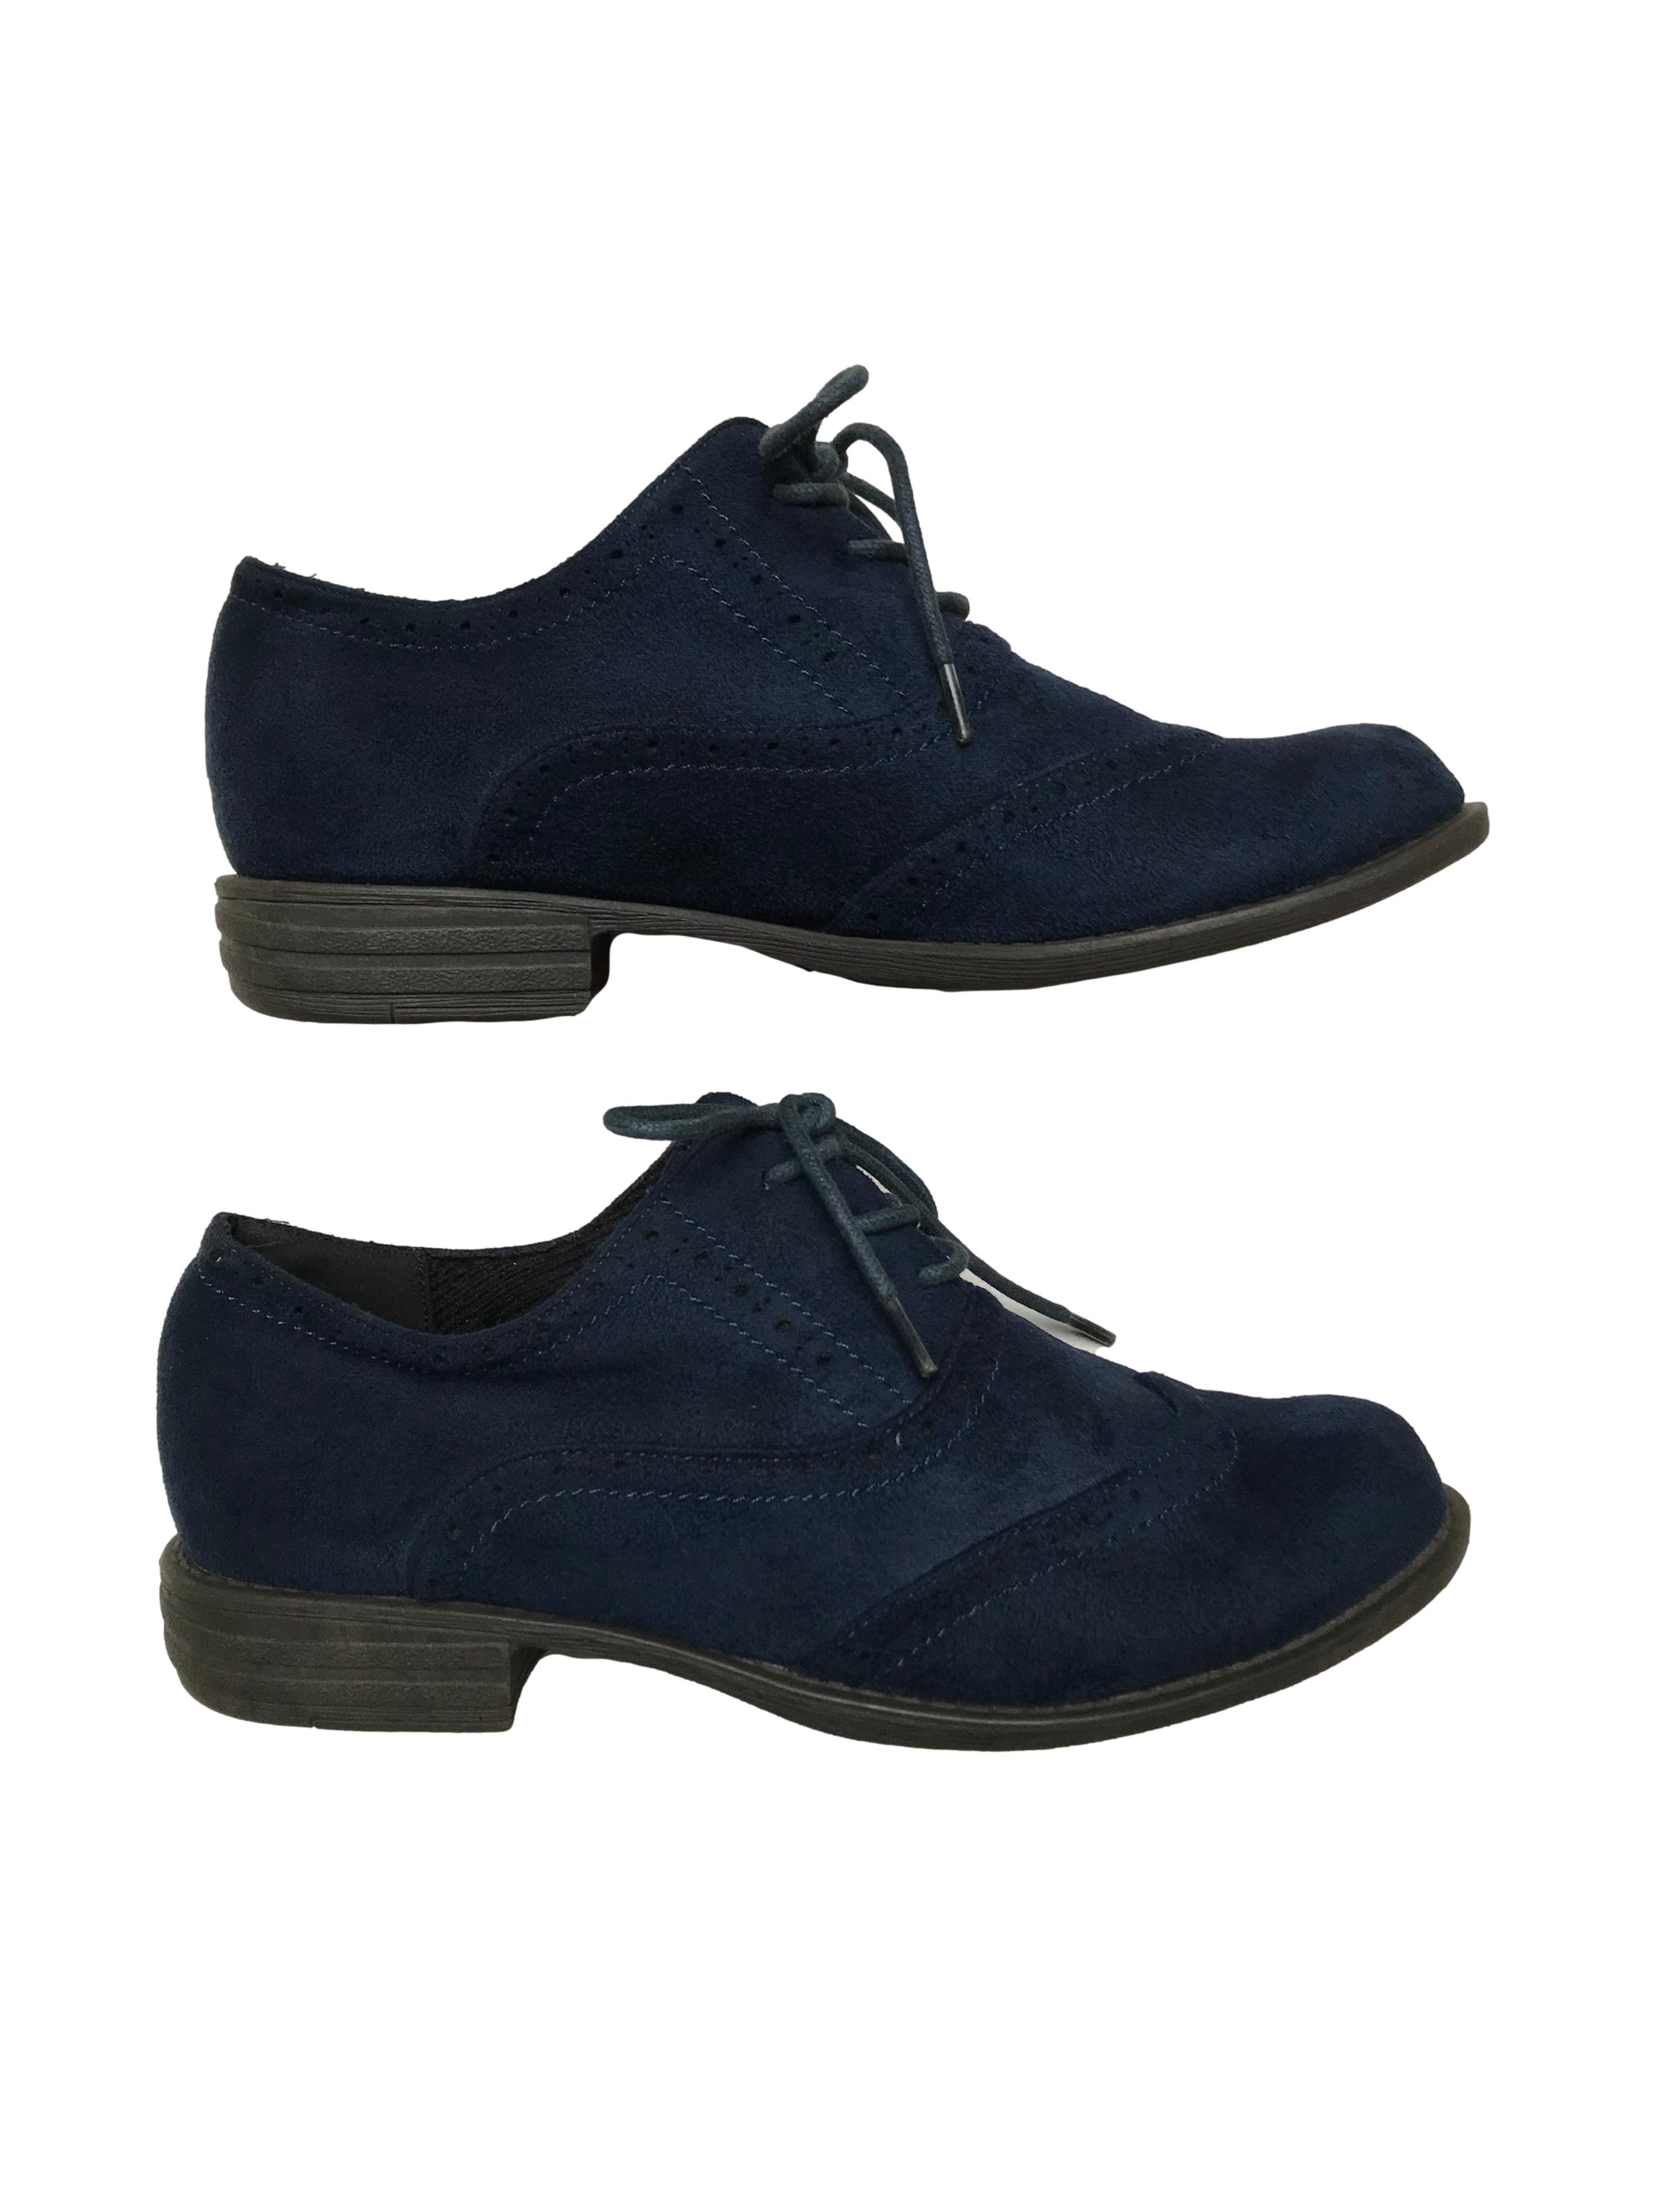 Zapatos Bata Oxford de textil tipo piel de durazno y Estado 9/10. | Las Traperas